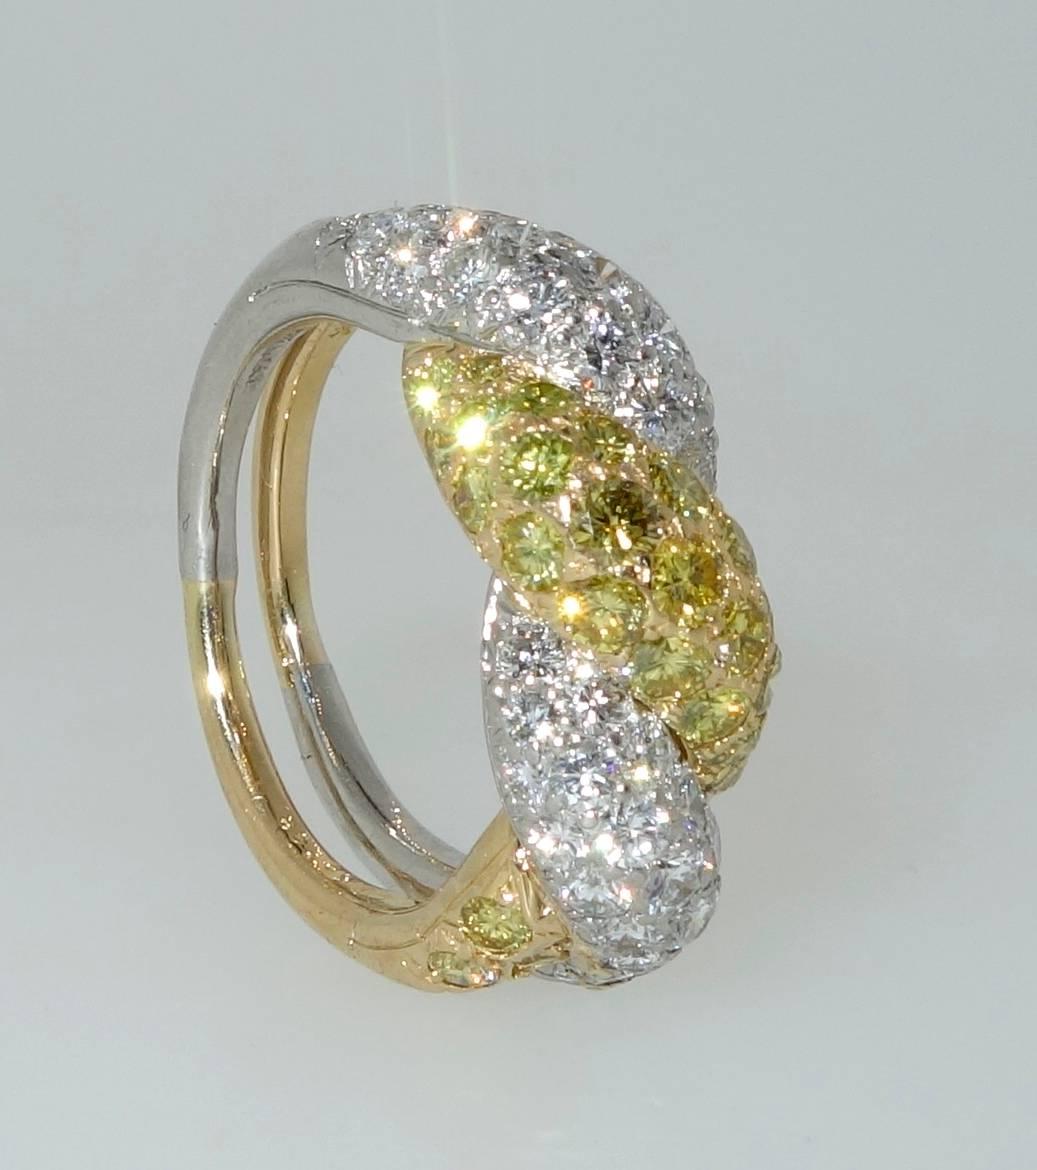 Contemporary Oscar Heyman White Diamond and Vivid Diamond Ring